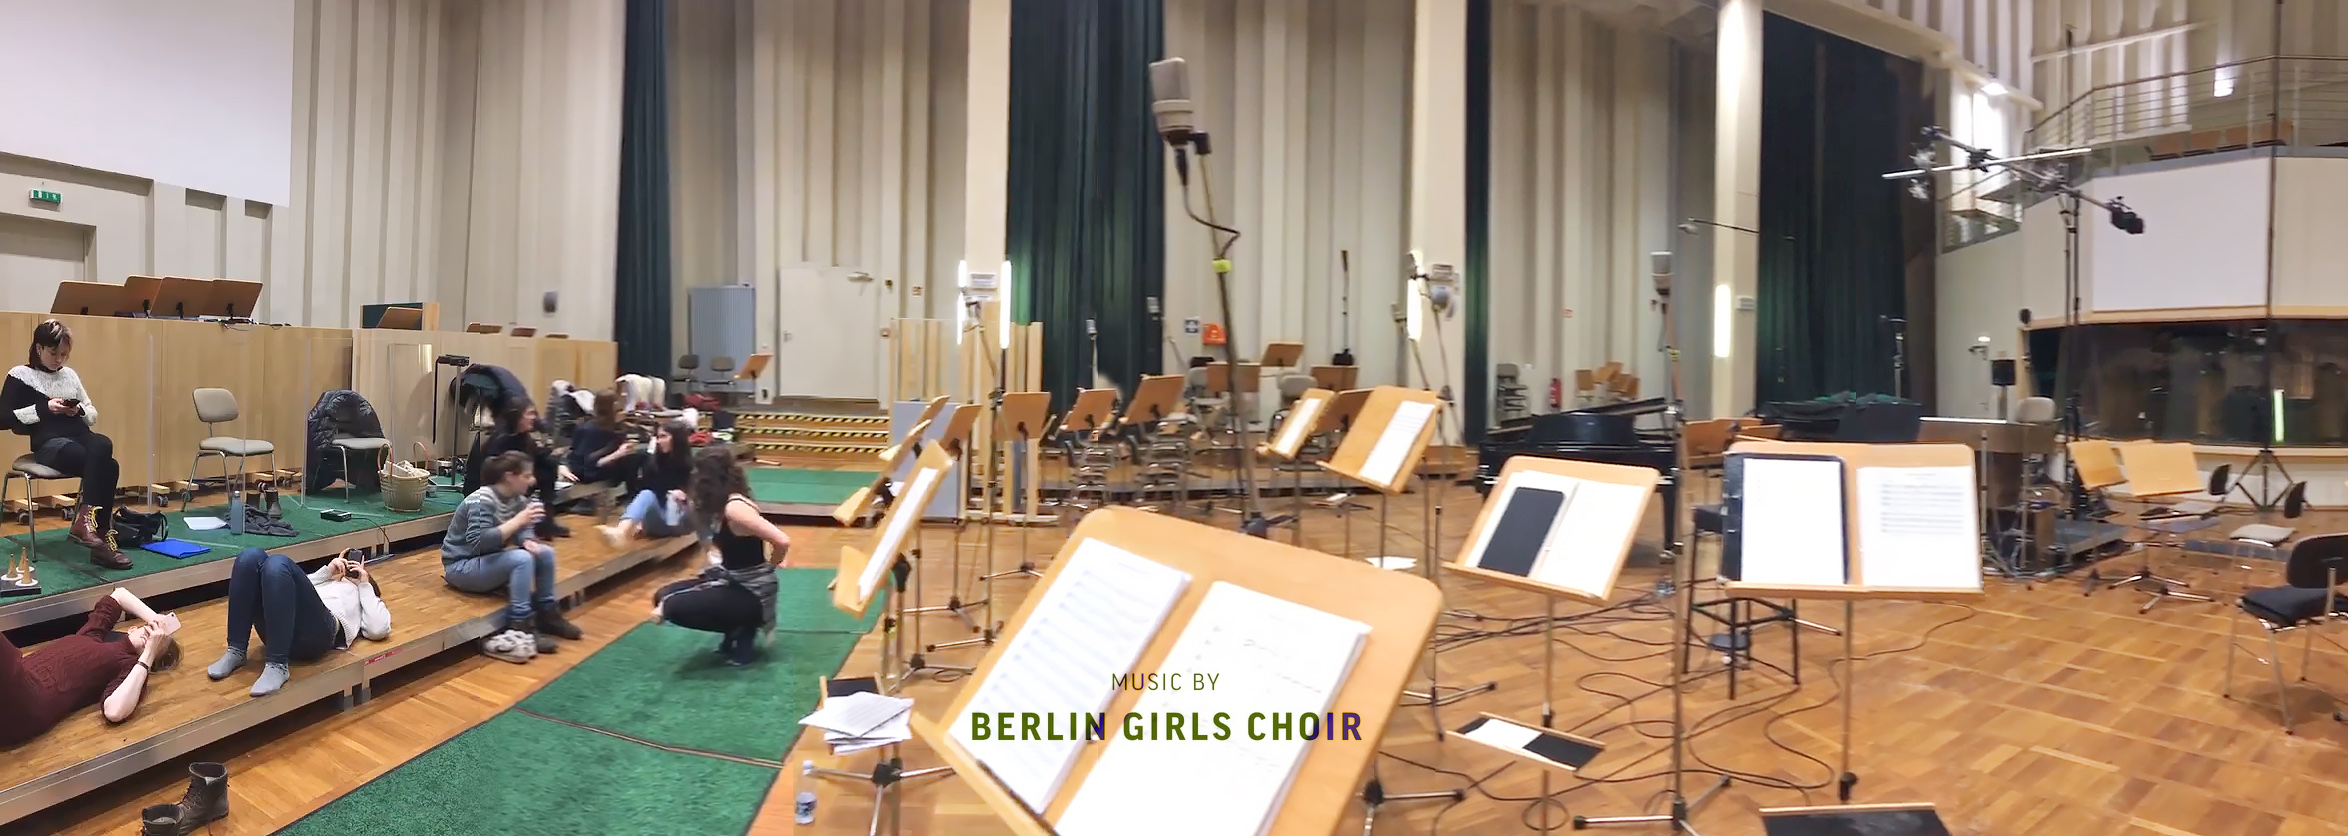 Studio Babelsberg: Sound recording for GIRL GANG